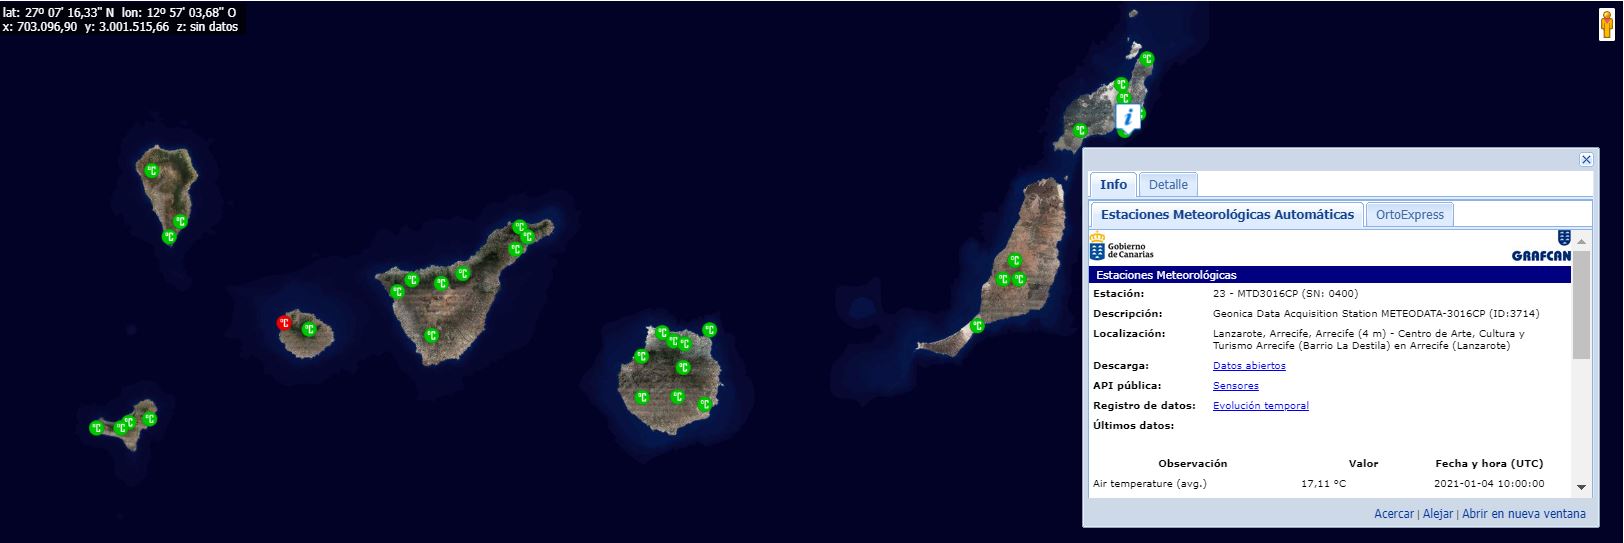 Mapa del Sistema de Observación Meteorológica del Gobierno de Canarias